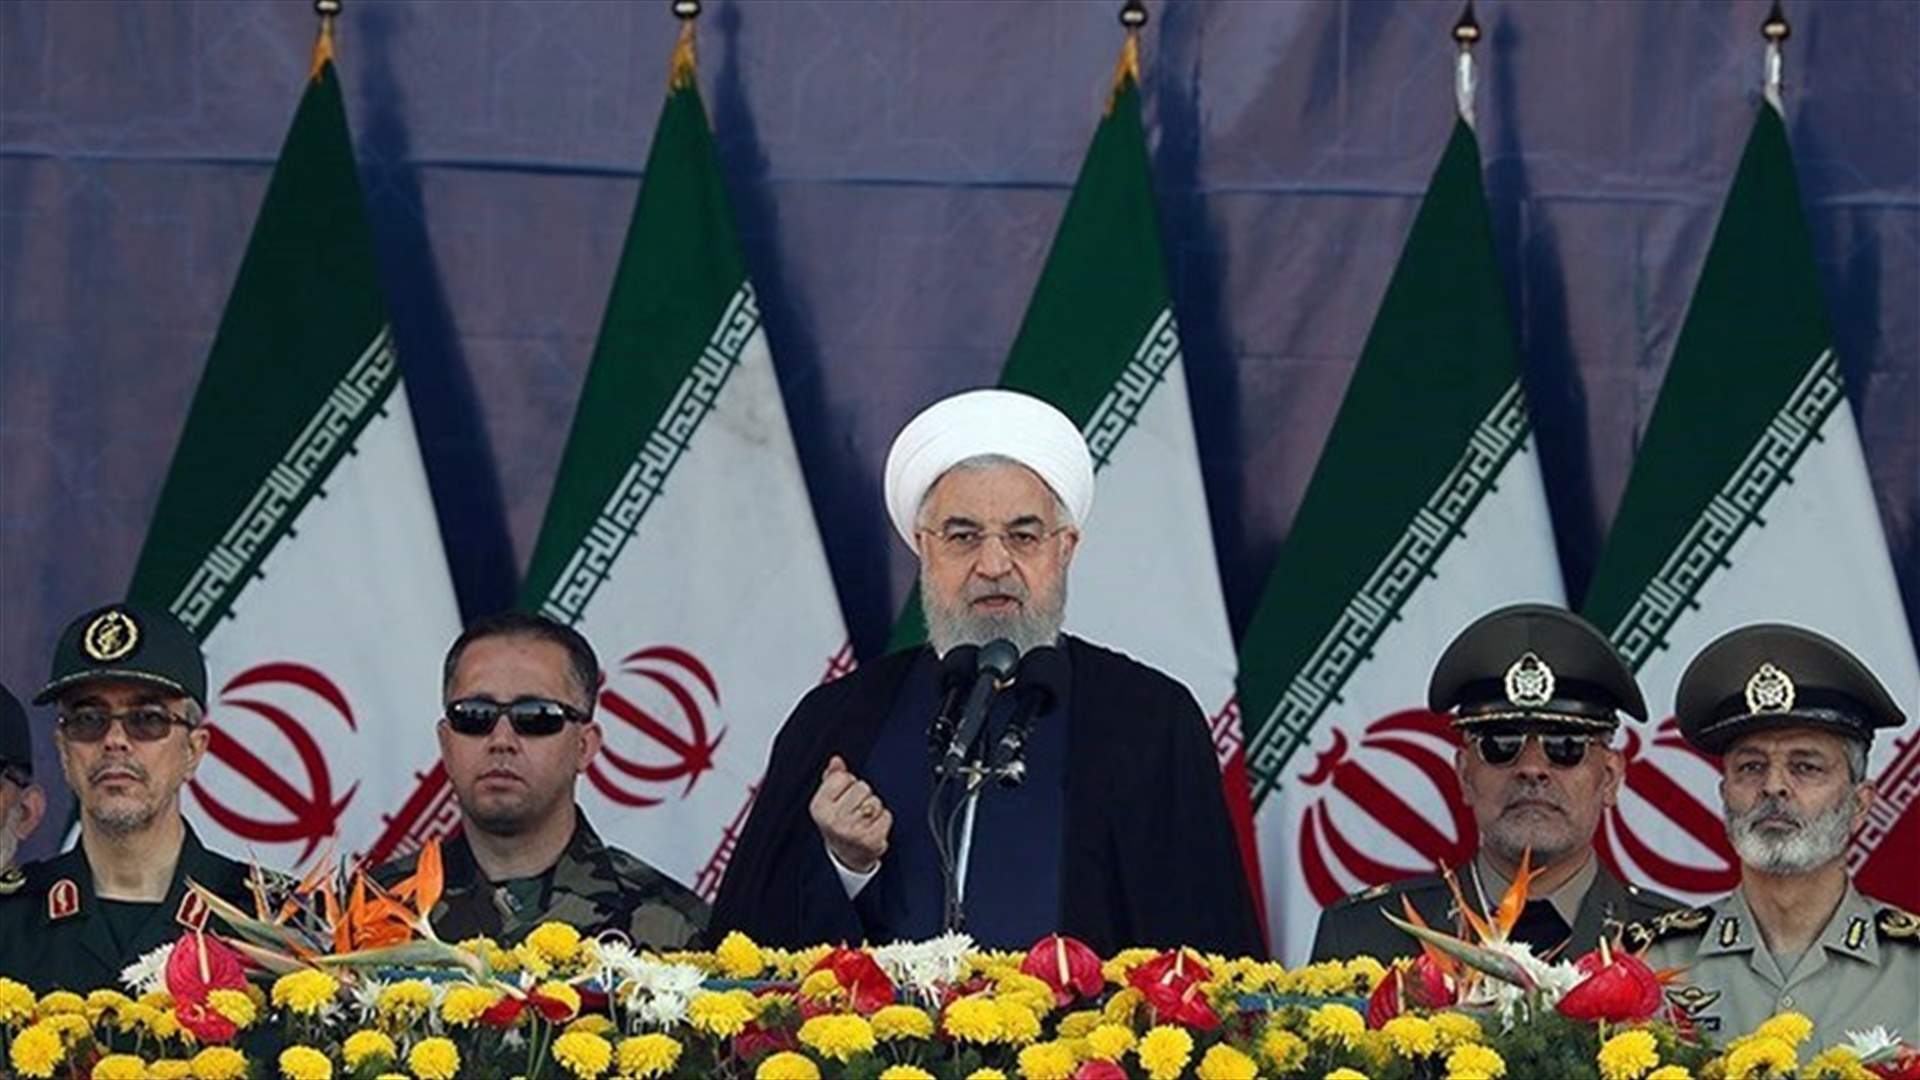 الولايات المتحدة تريد إثارة انعدام الأمن في إيران... روحاني: سنرد على الجرائم وسنجعل أميركا تندم